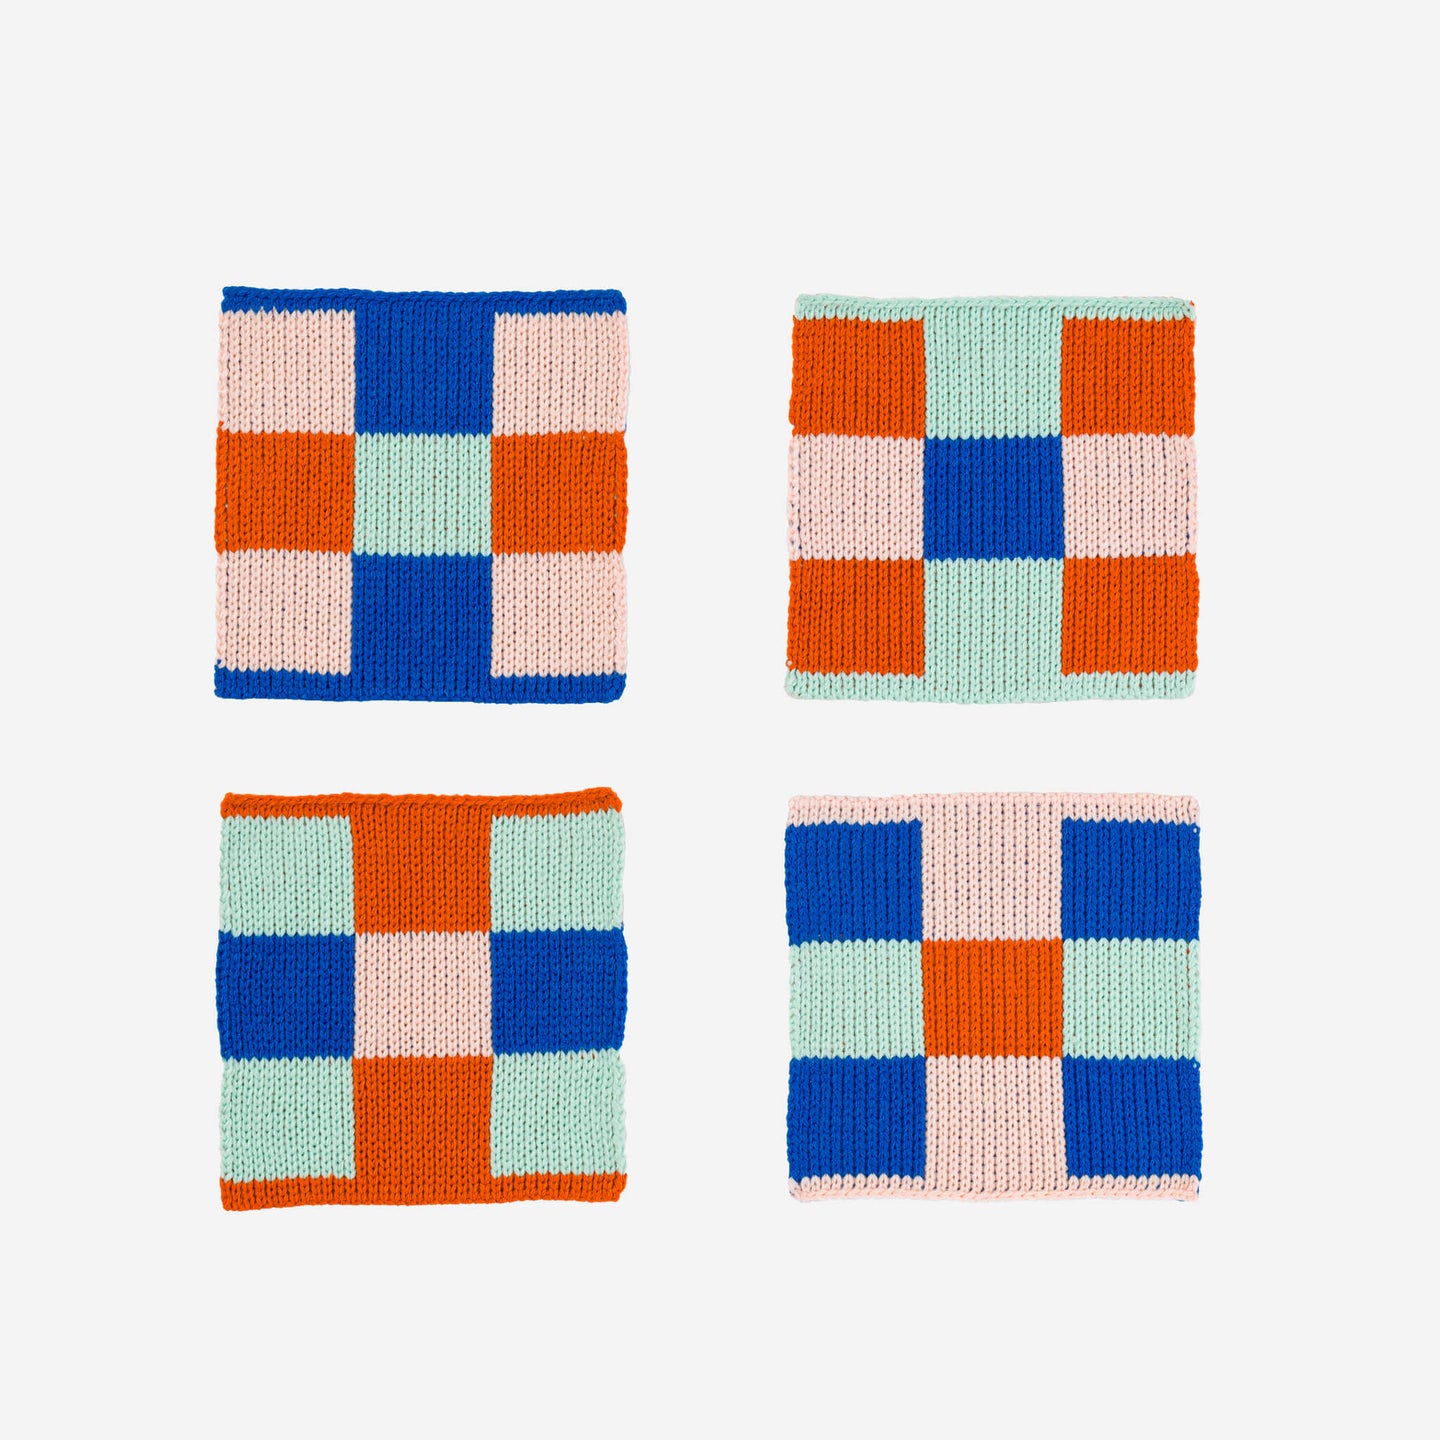 Square Square Soft Fabric Knit Coasters Non Scratch